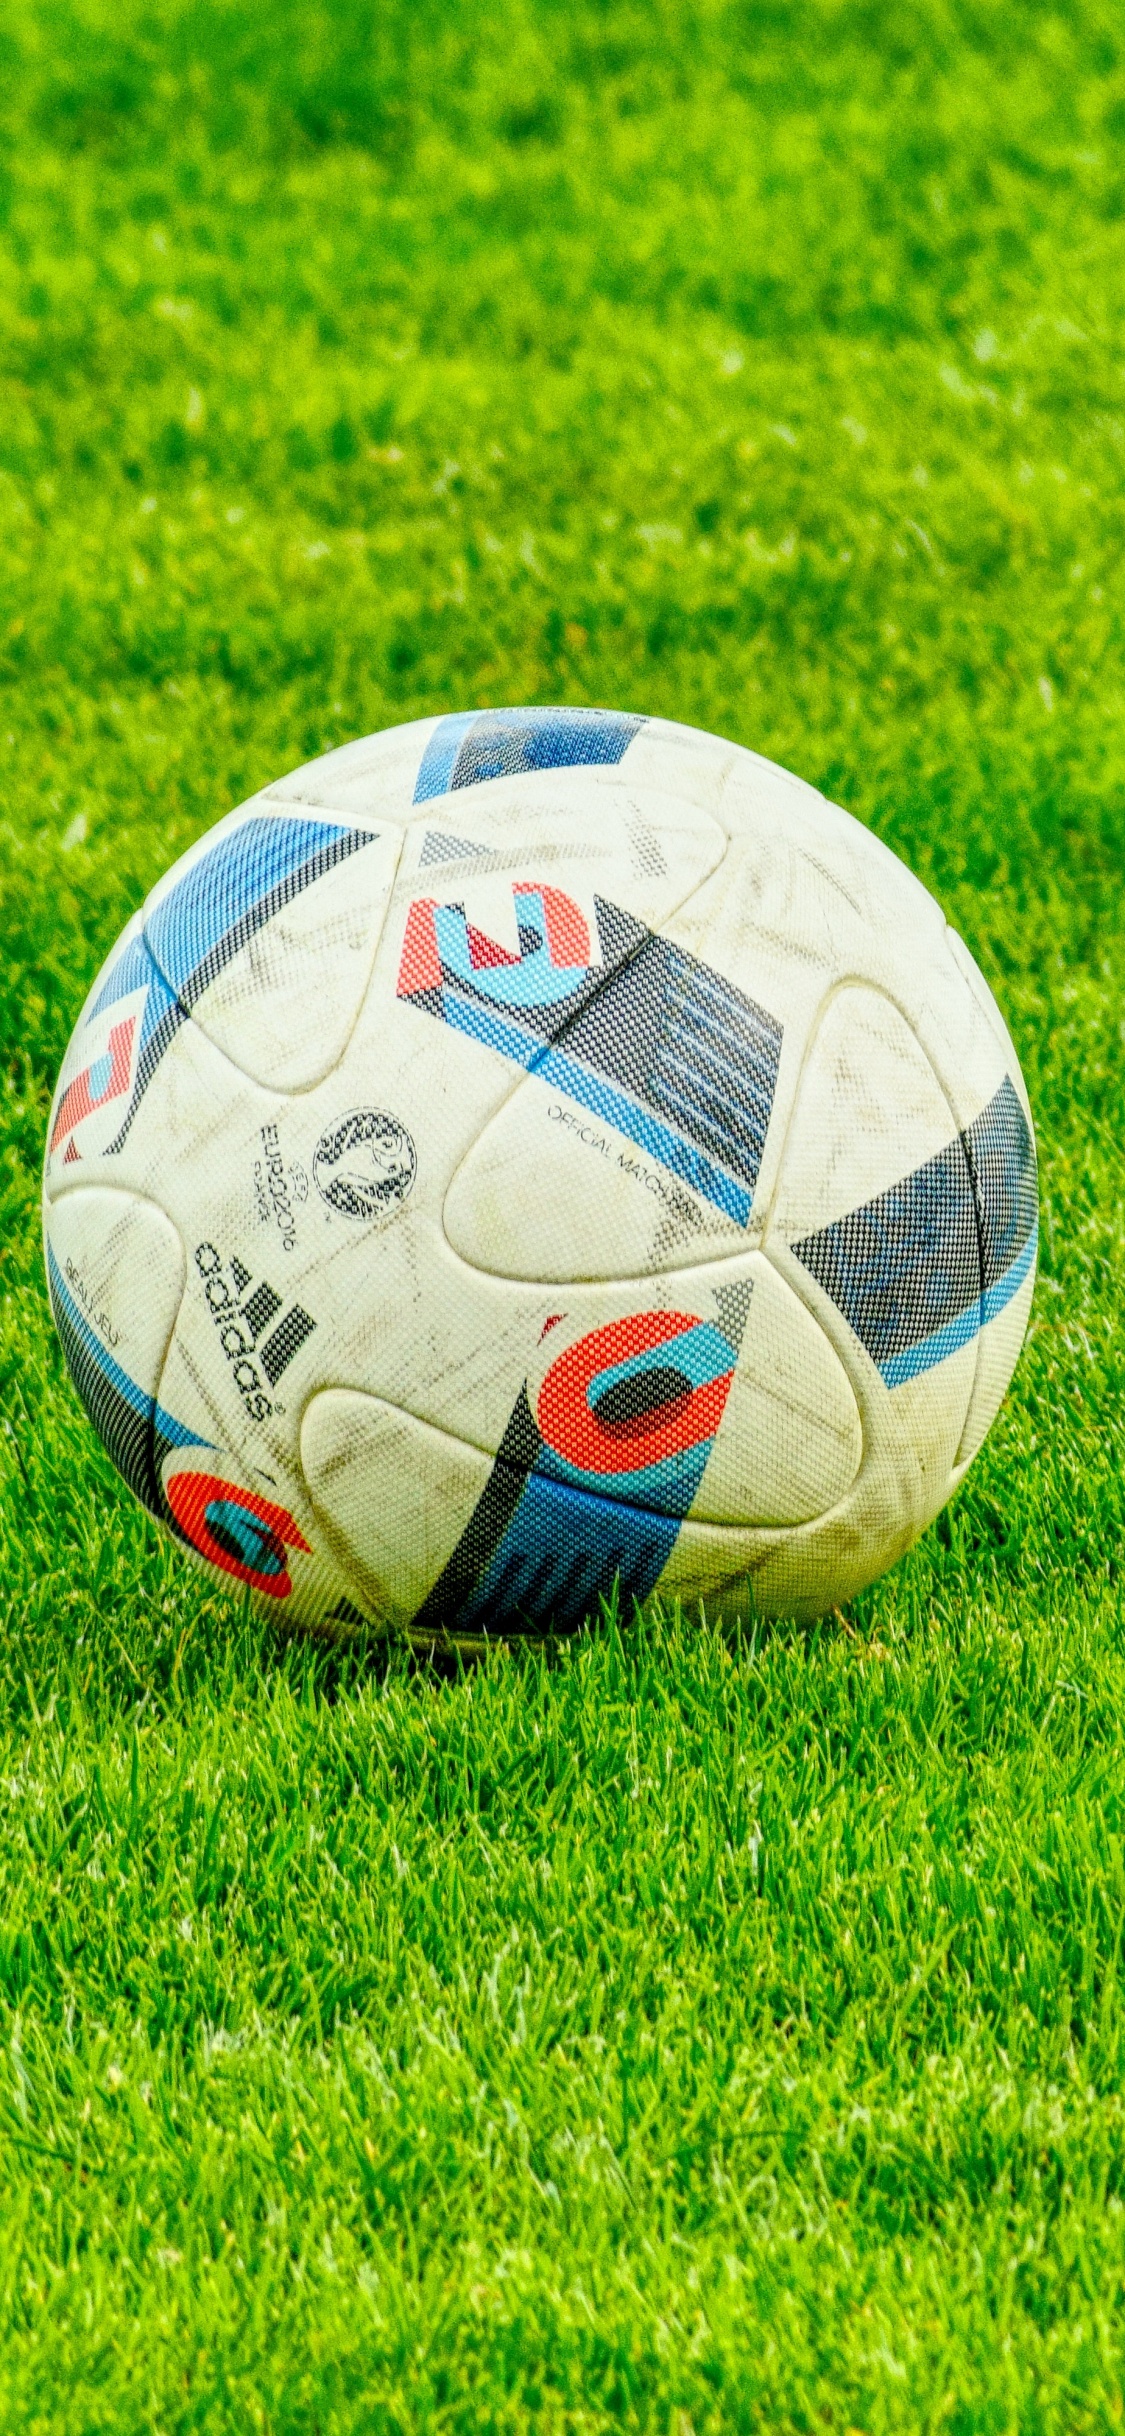 足球, 球, 草, 国际足球的规则, 气球 壁纸 1125x2436 允许